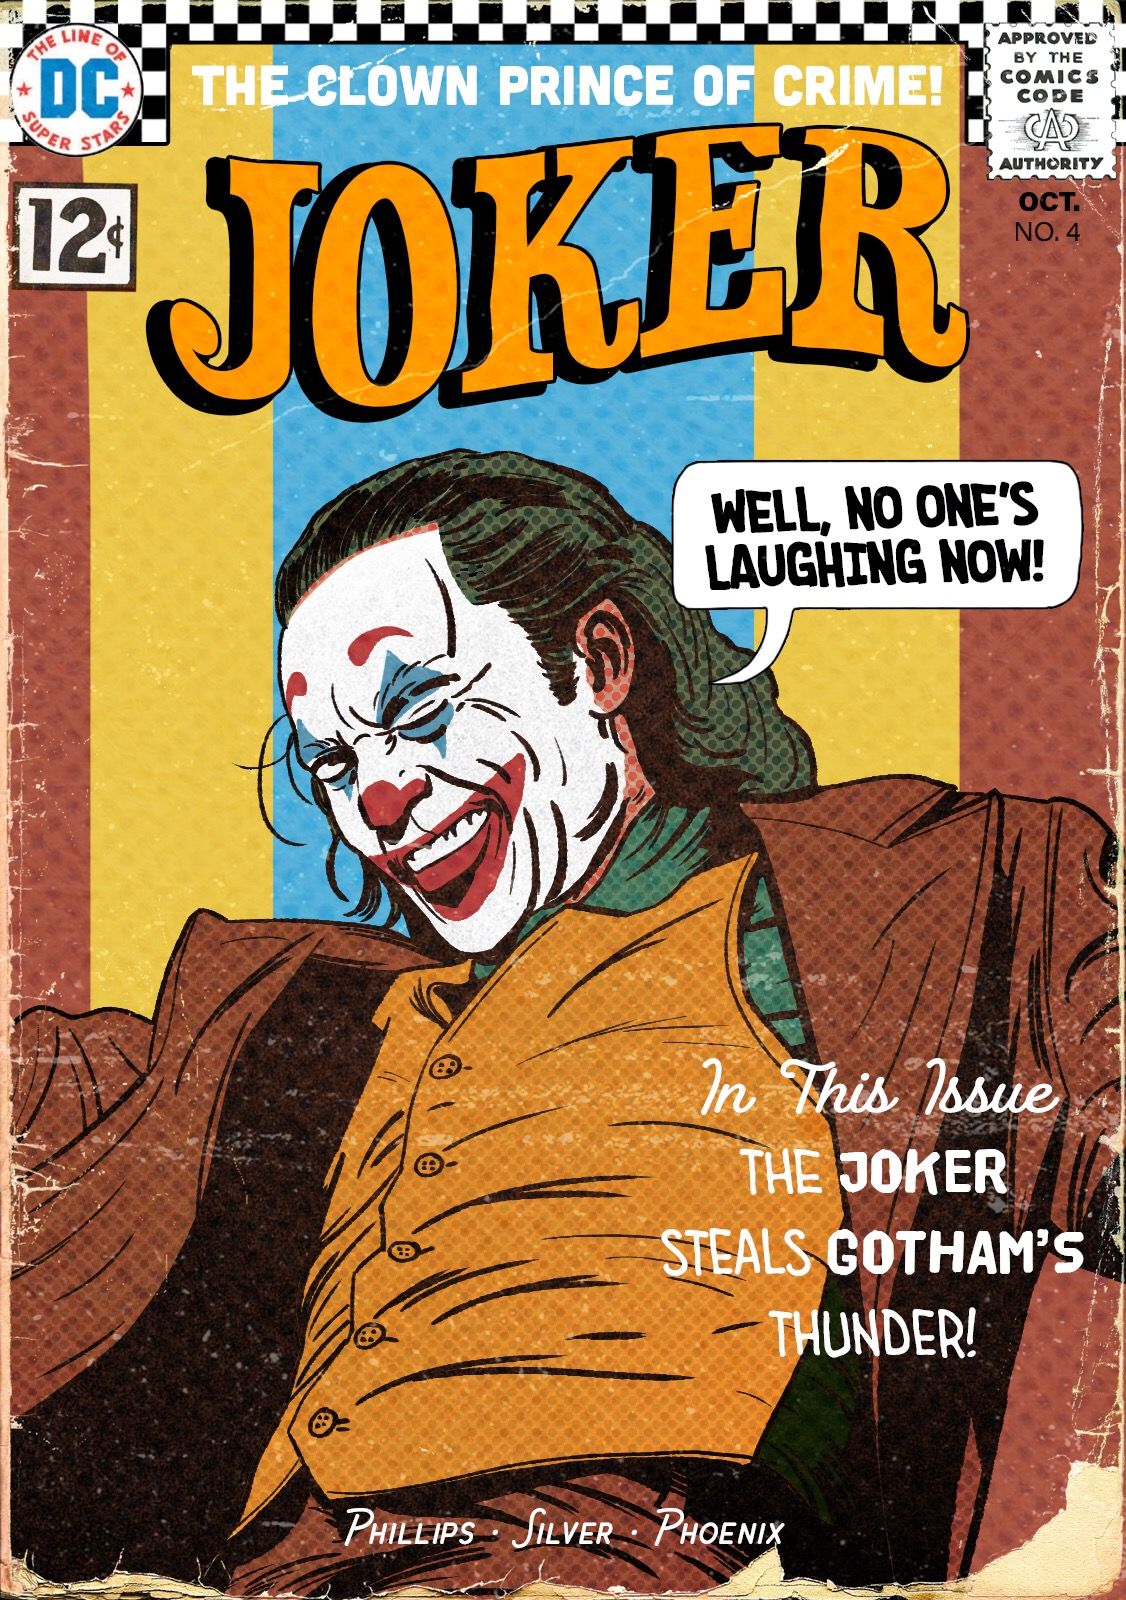 portada retro comic - the joker you get what you deserve